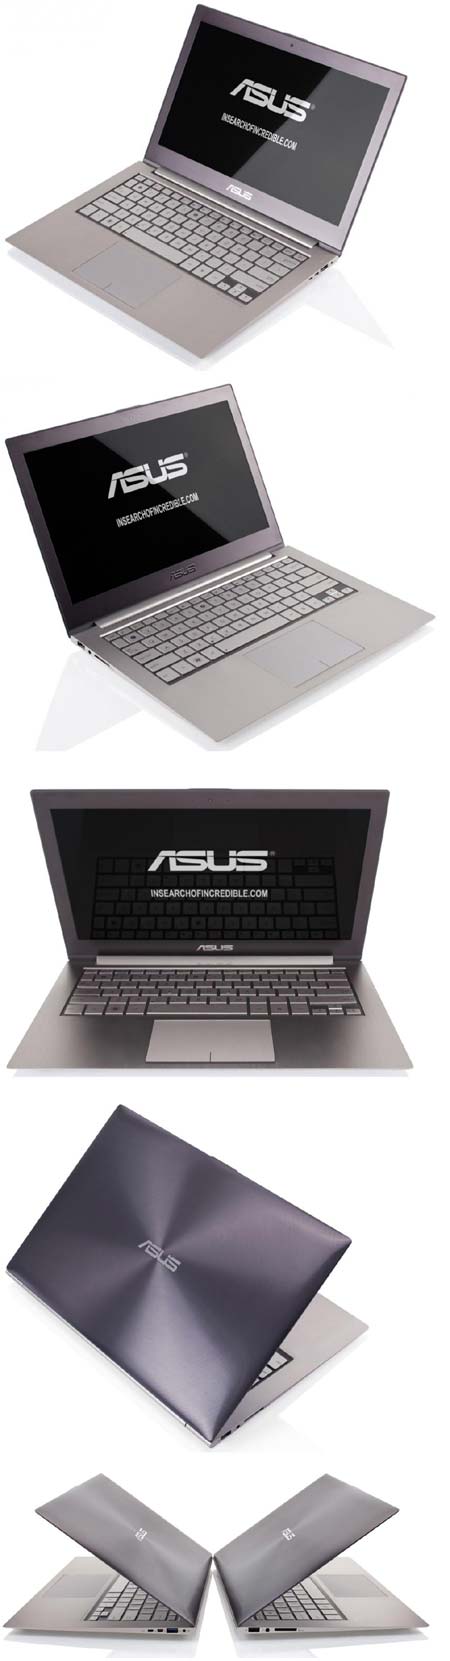 ASUS представляет ноутбуки Zenbook UX21 и UX31